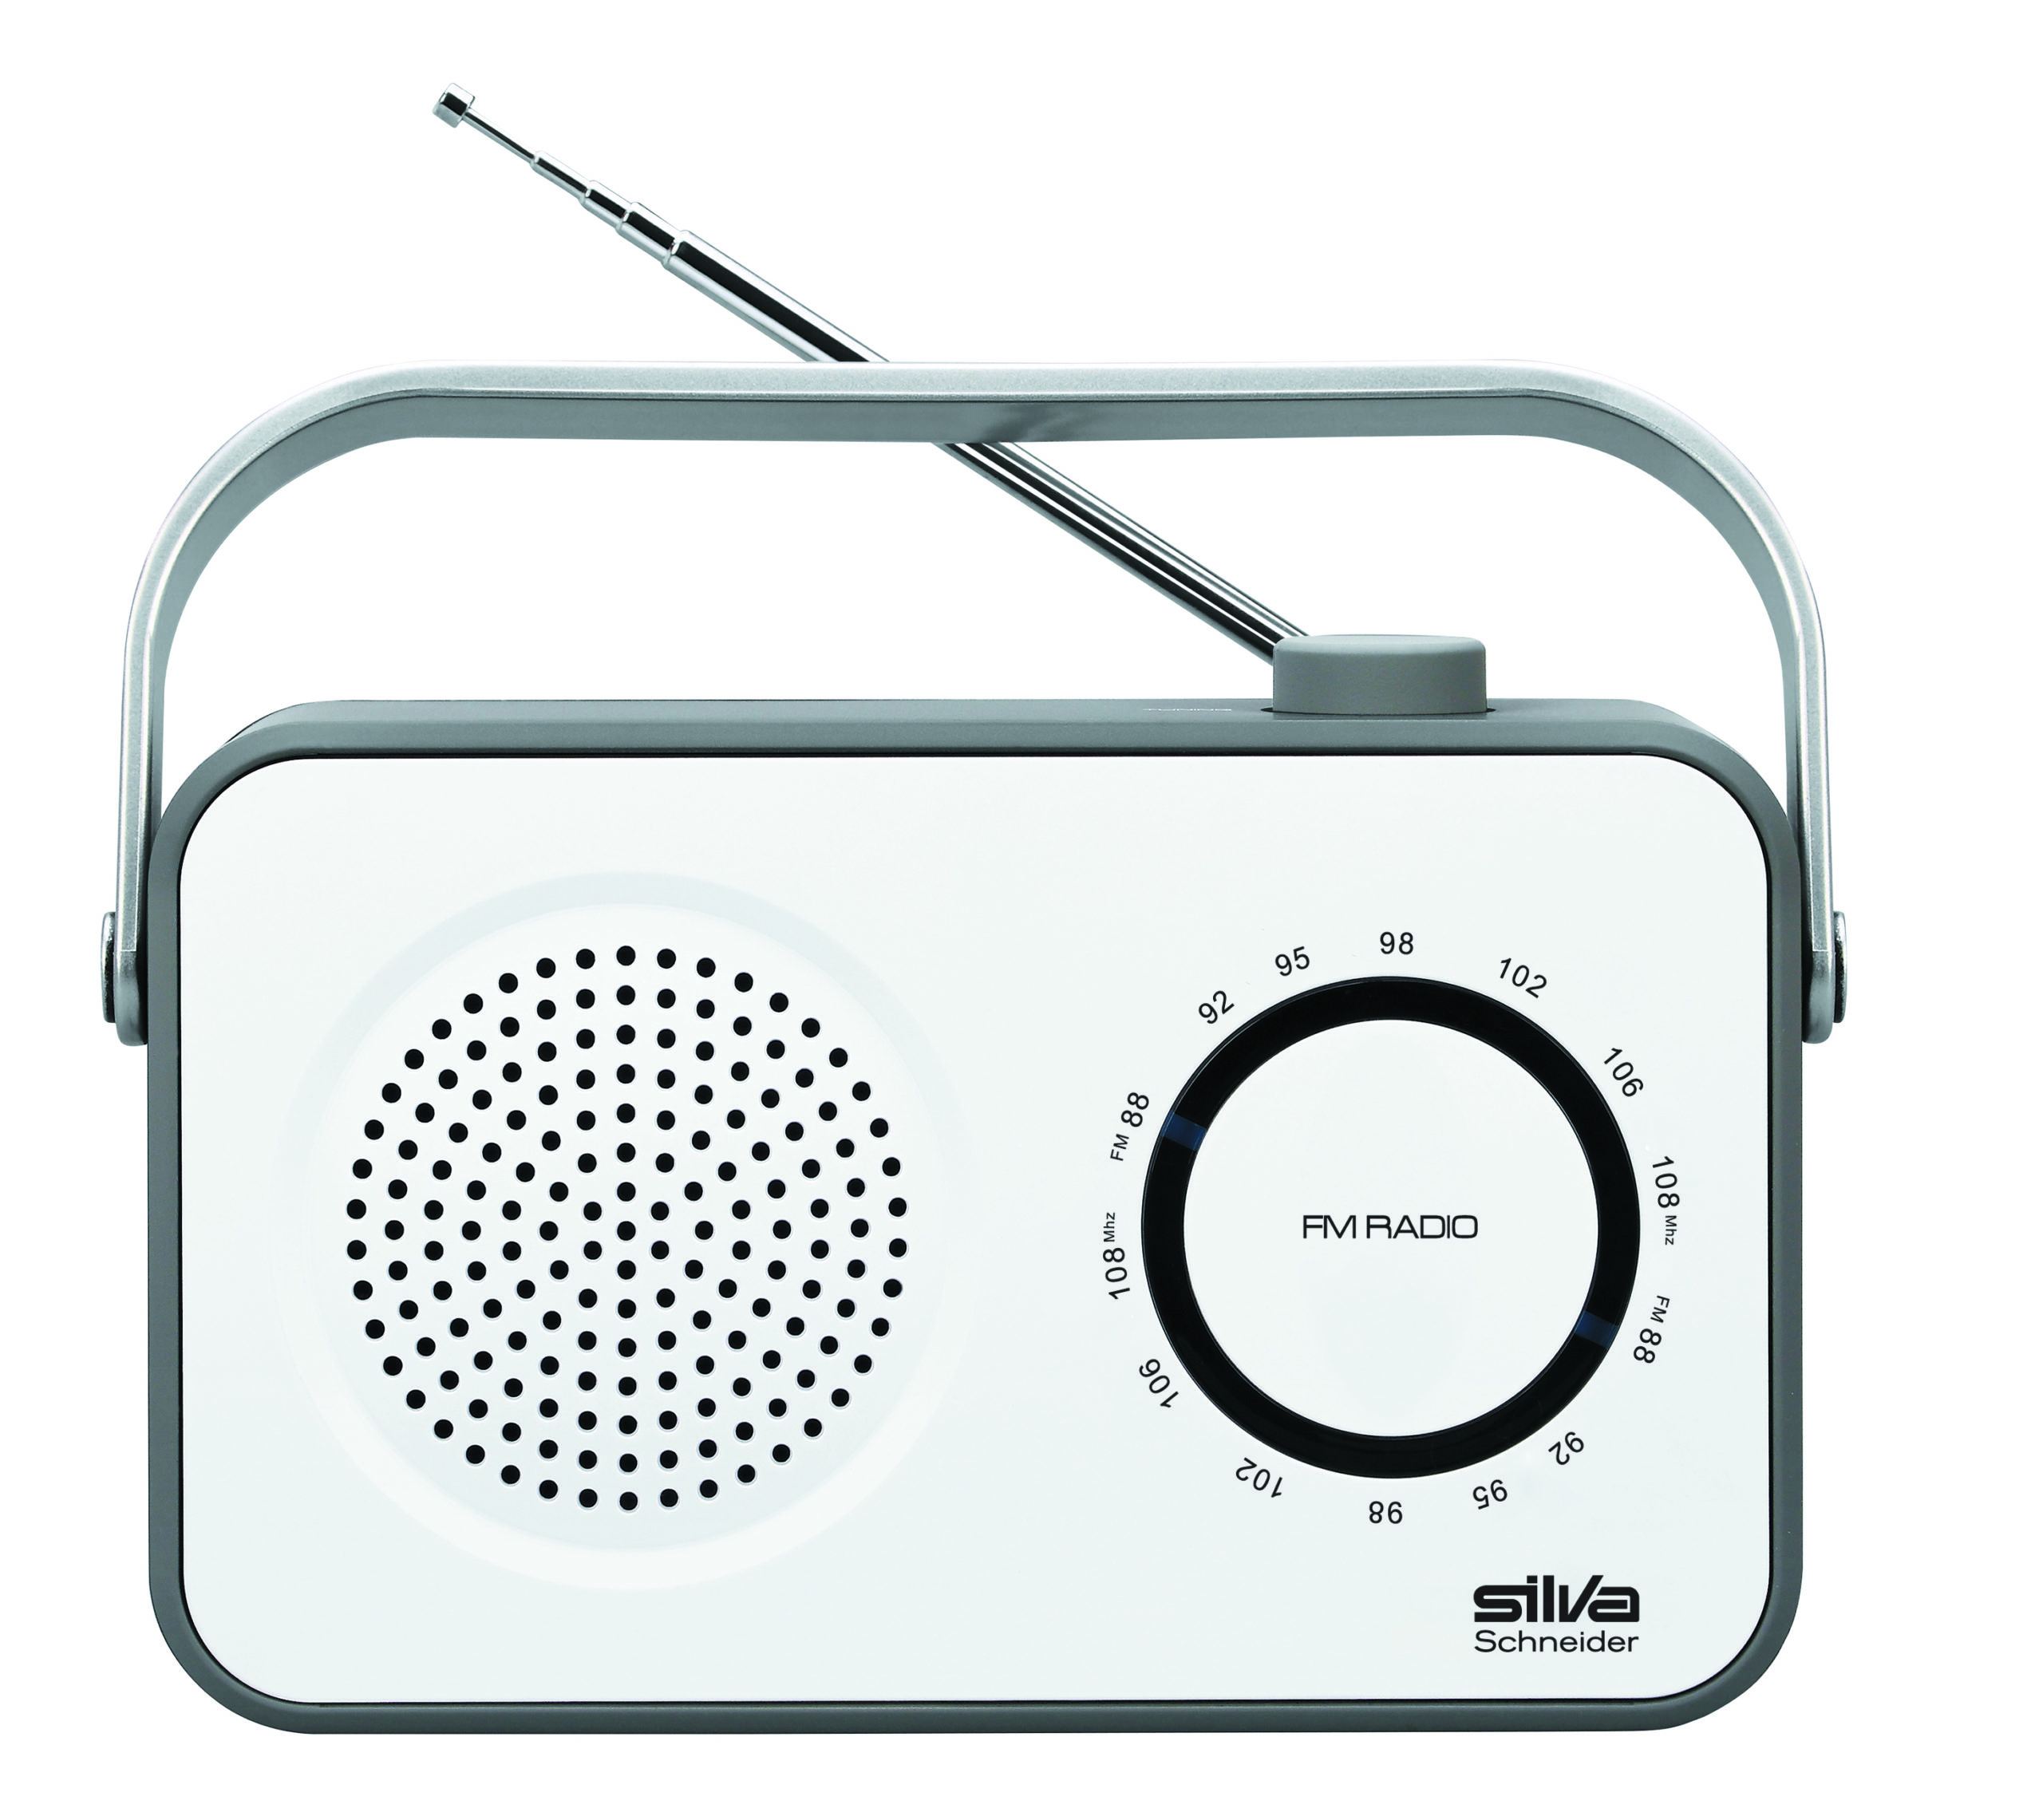 SILVA-SCHNEIDER M 295 FM, weiß/grau Radio